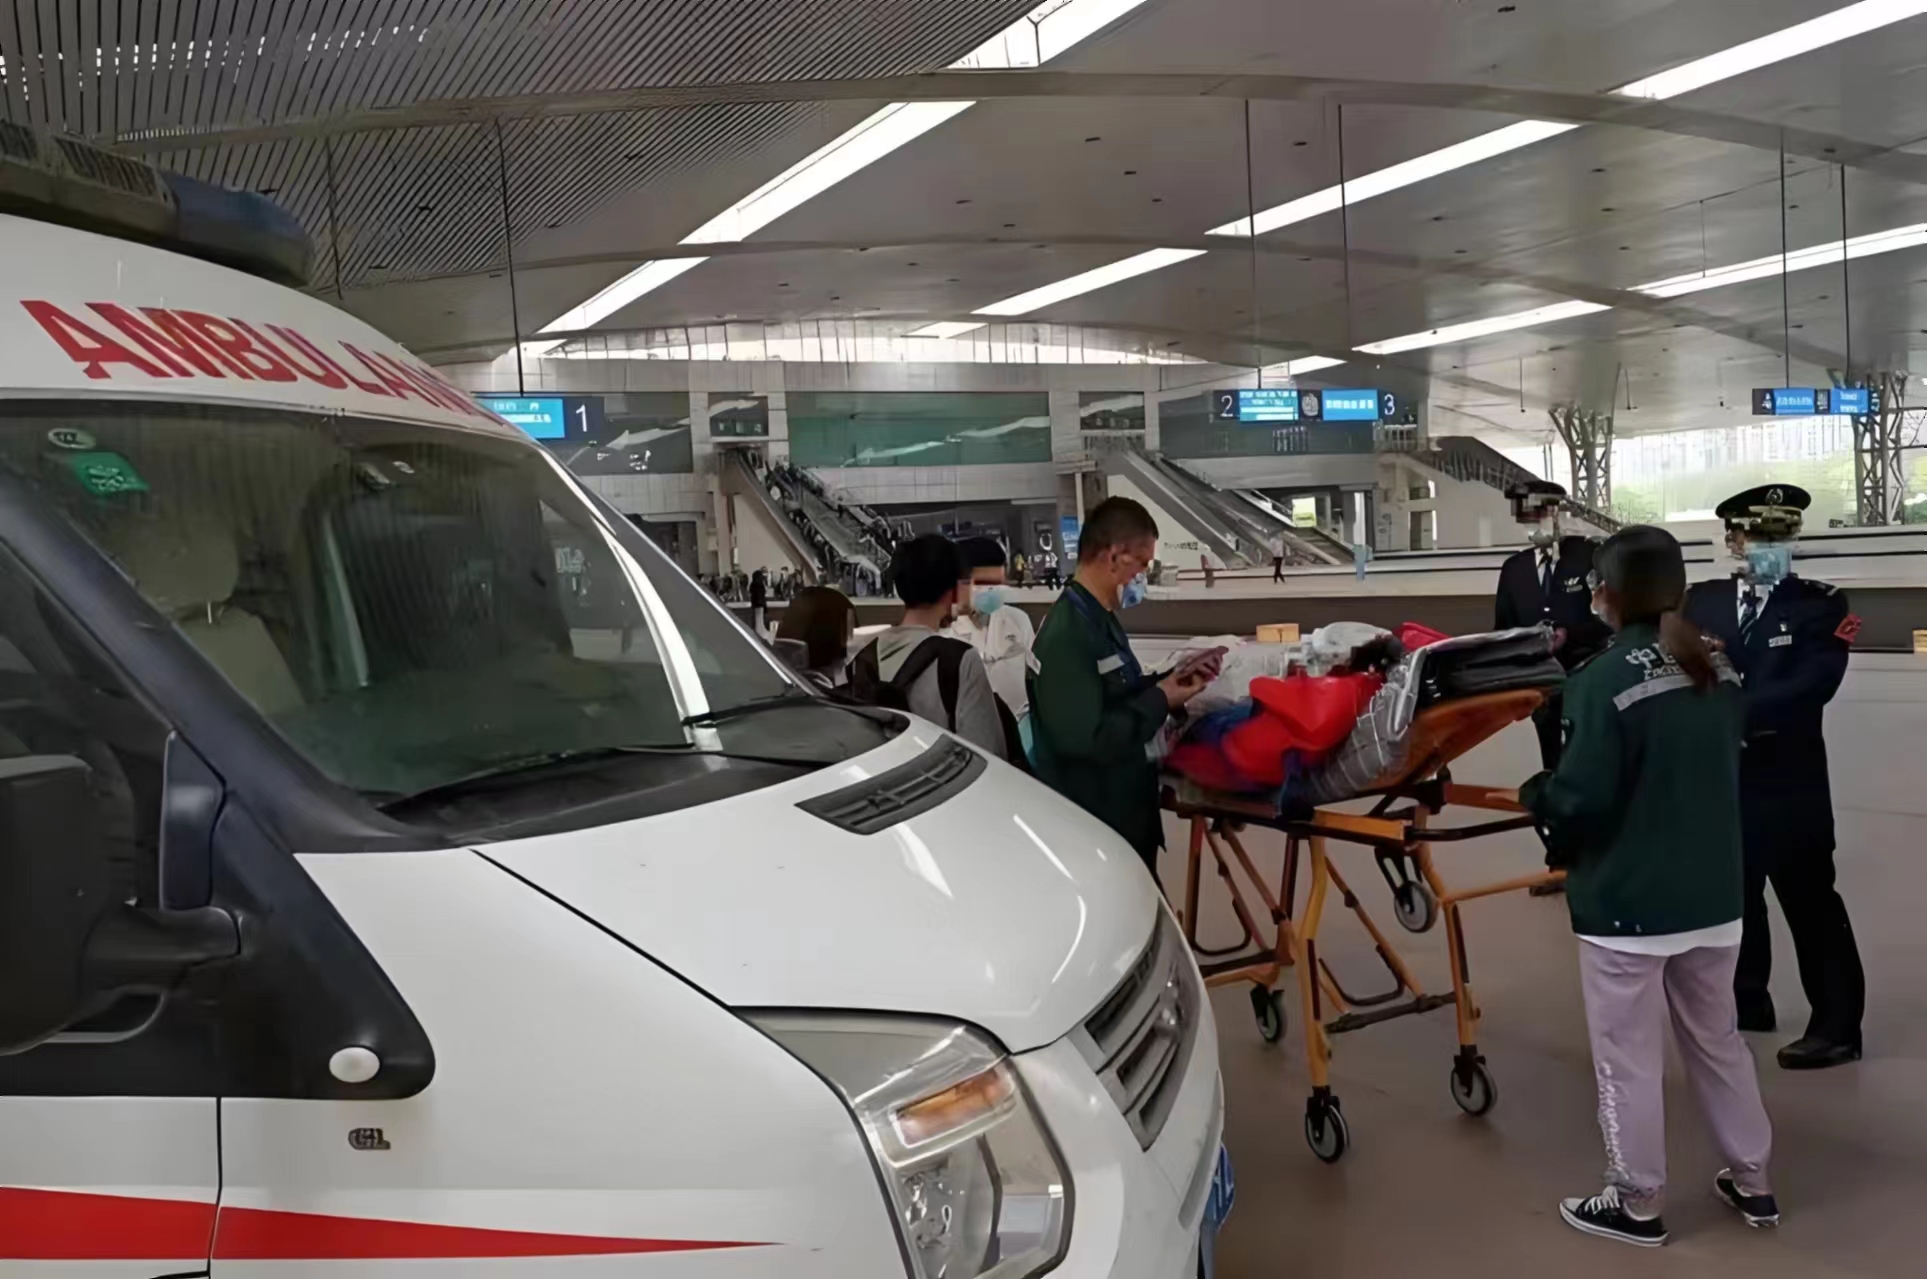 北京救护车接送病人-私人救护车出租-全国救护中心